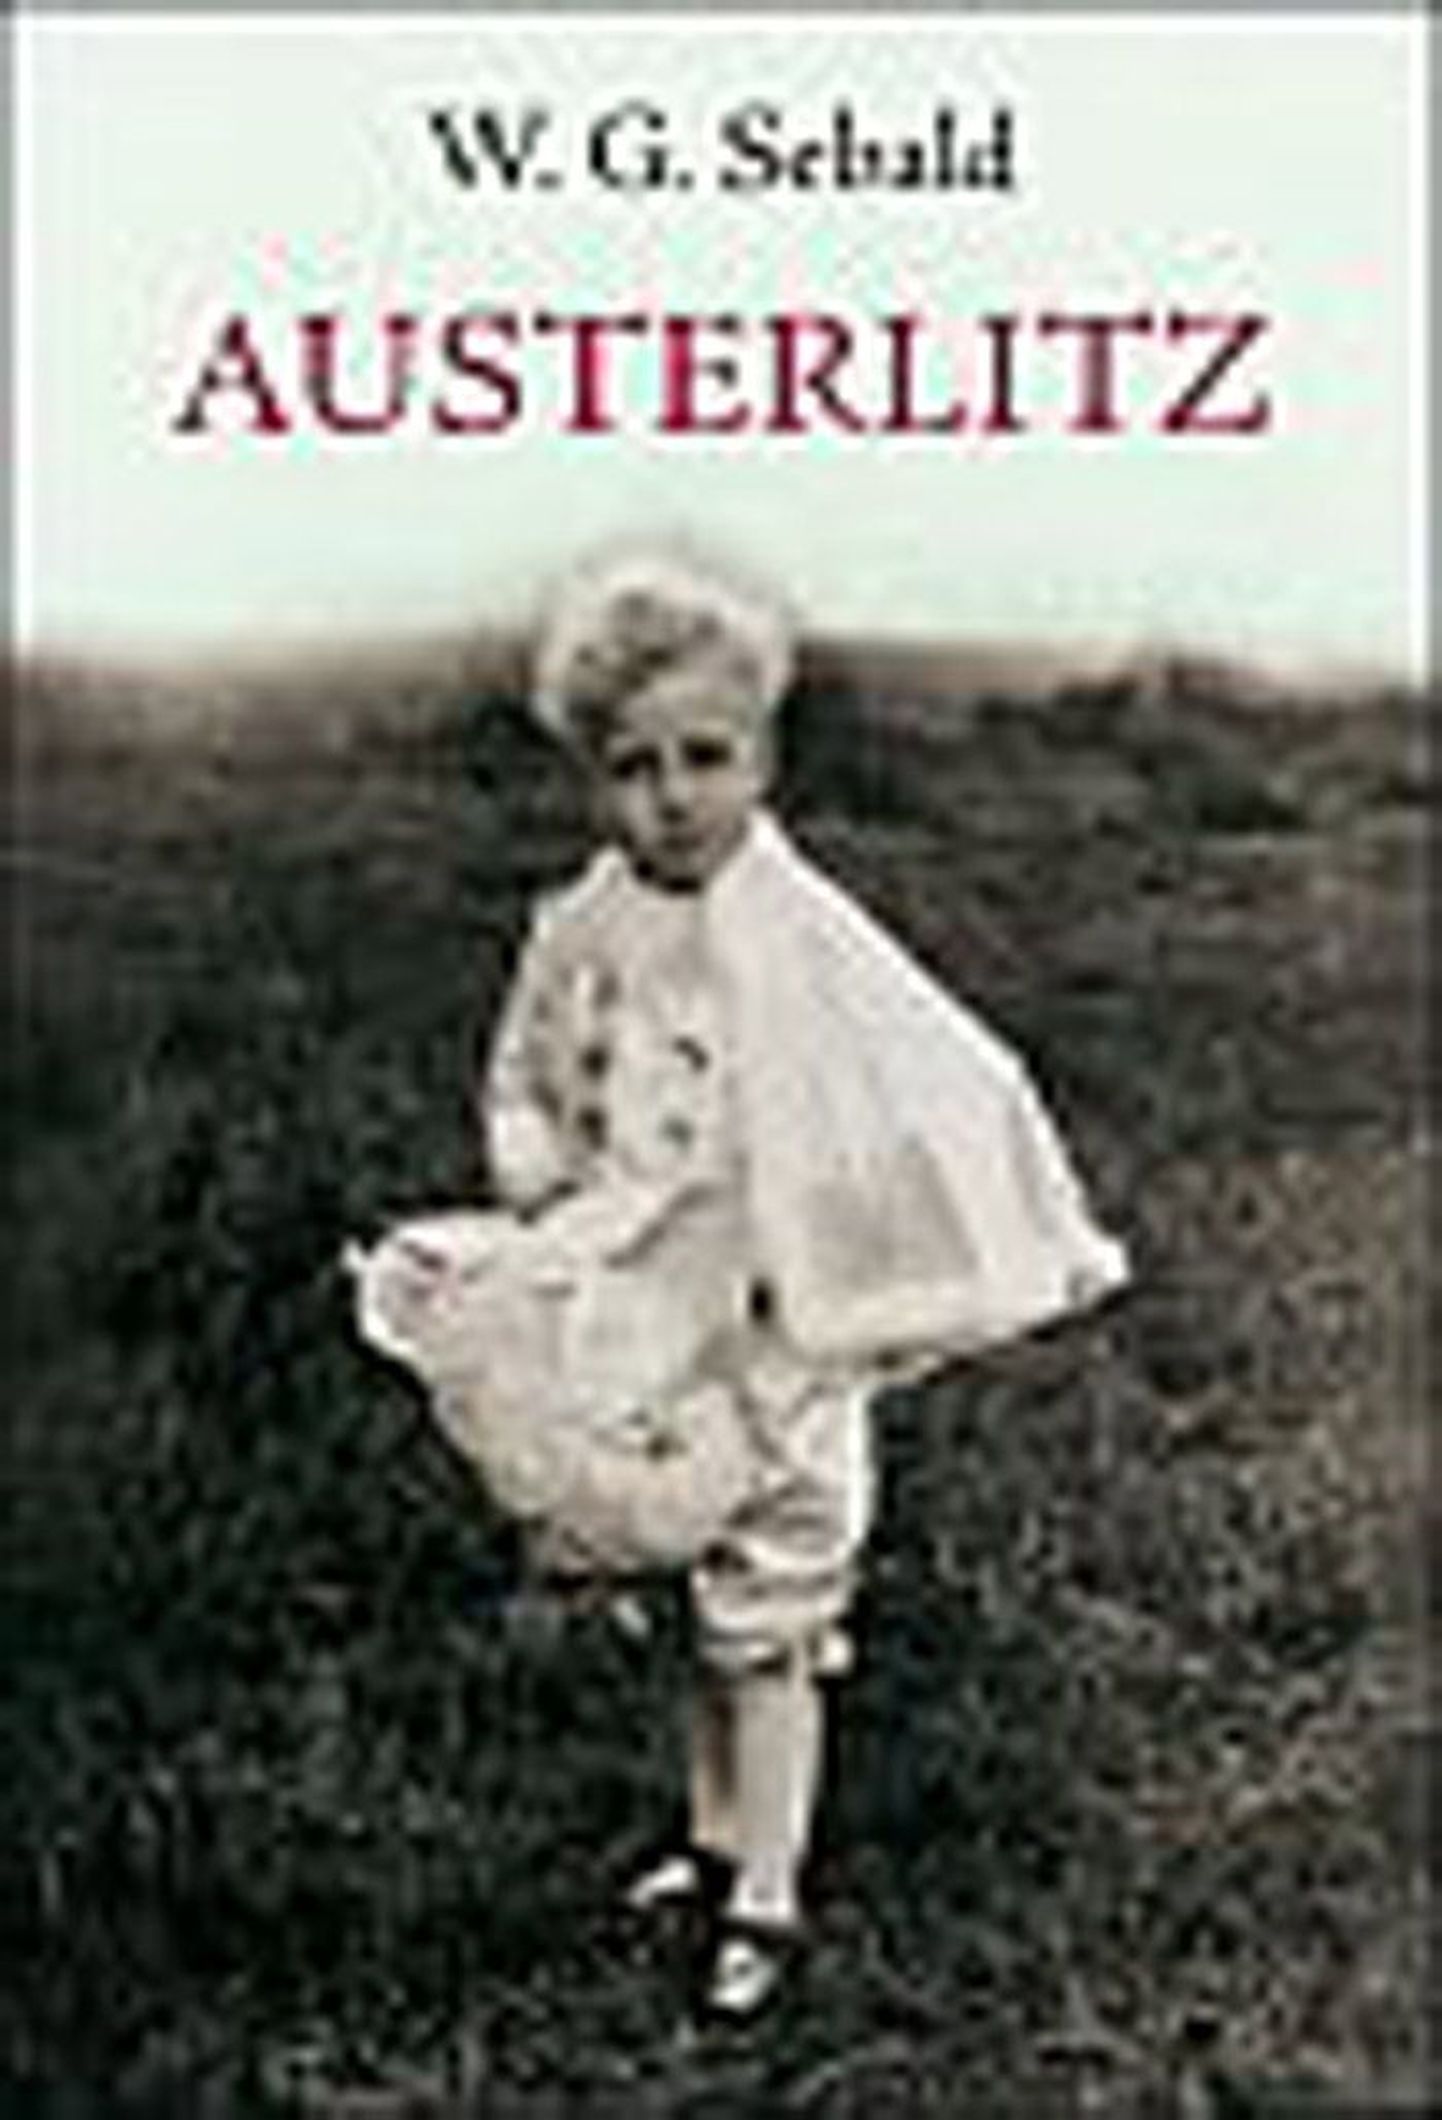 W. G. Sebald
«Austerlitz»
Tõlkinud Mati Sirkel
Varrak, 2009
256 lk